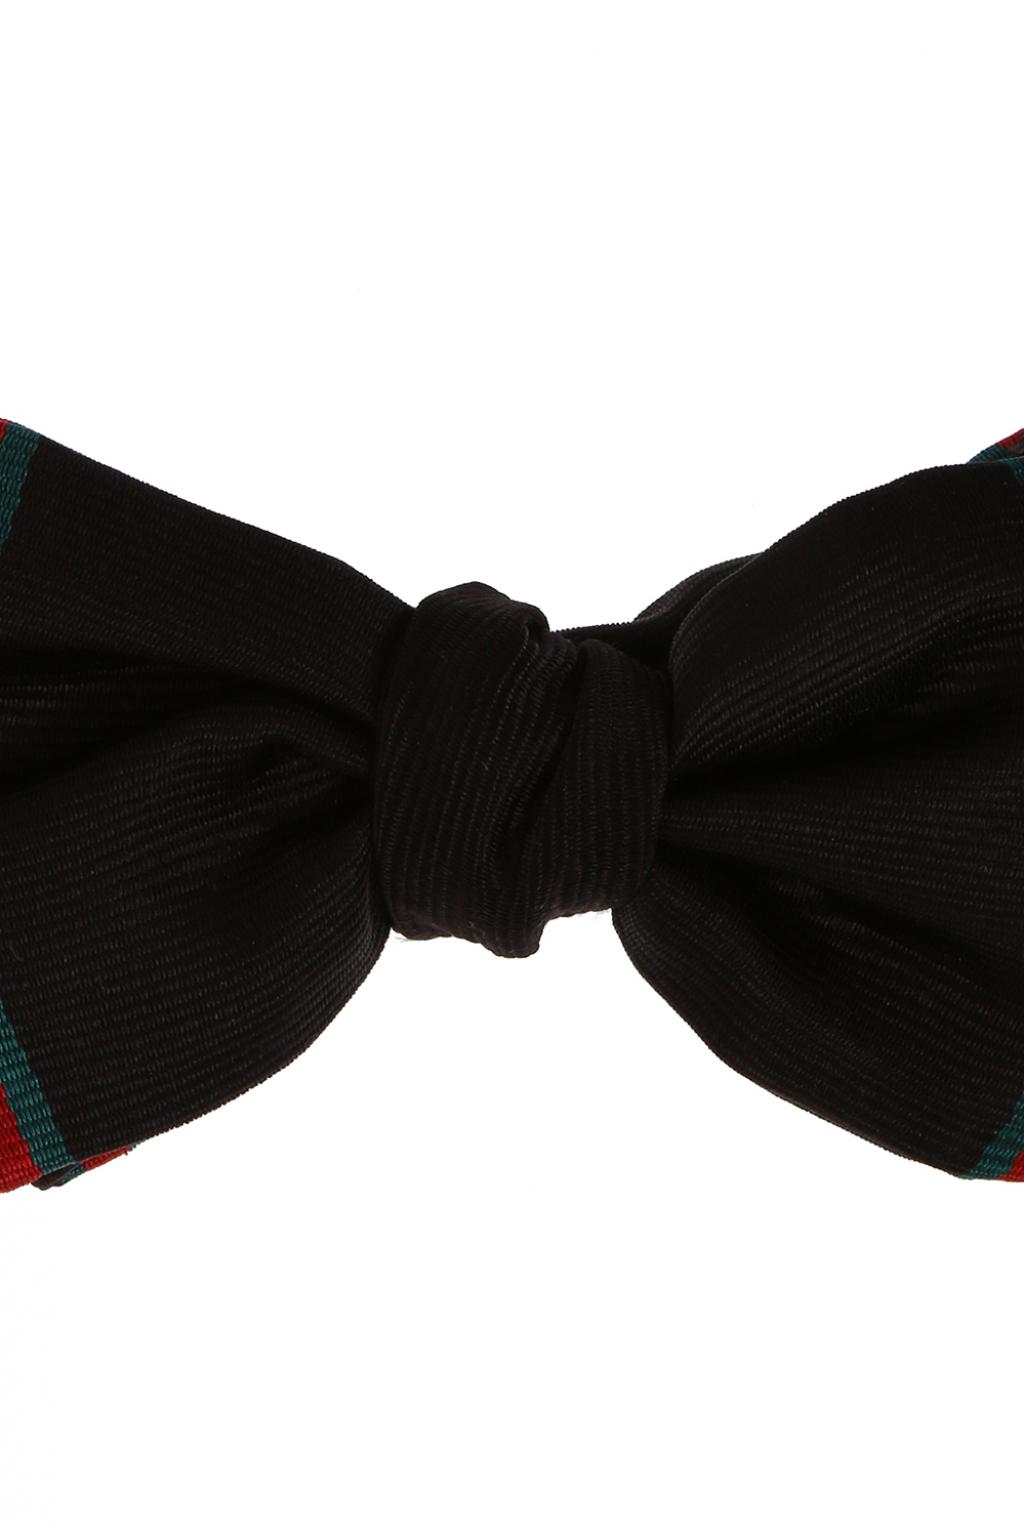 Gucci 'Web' bow tie, Men's Accessories